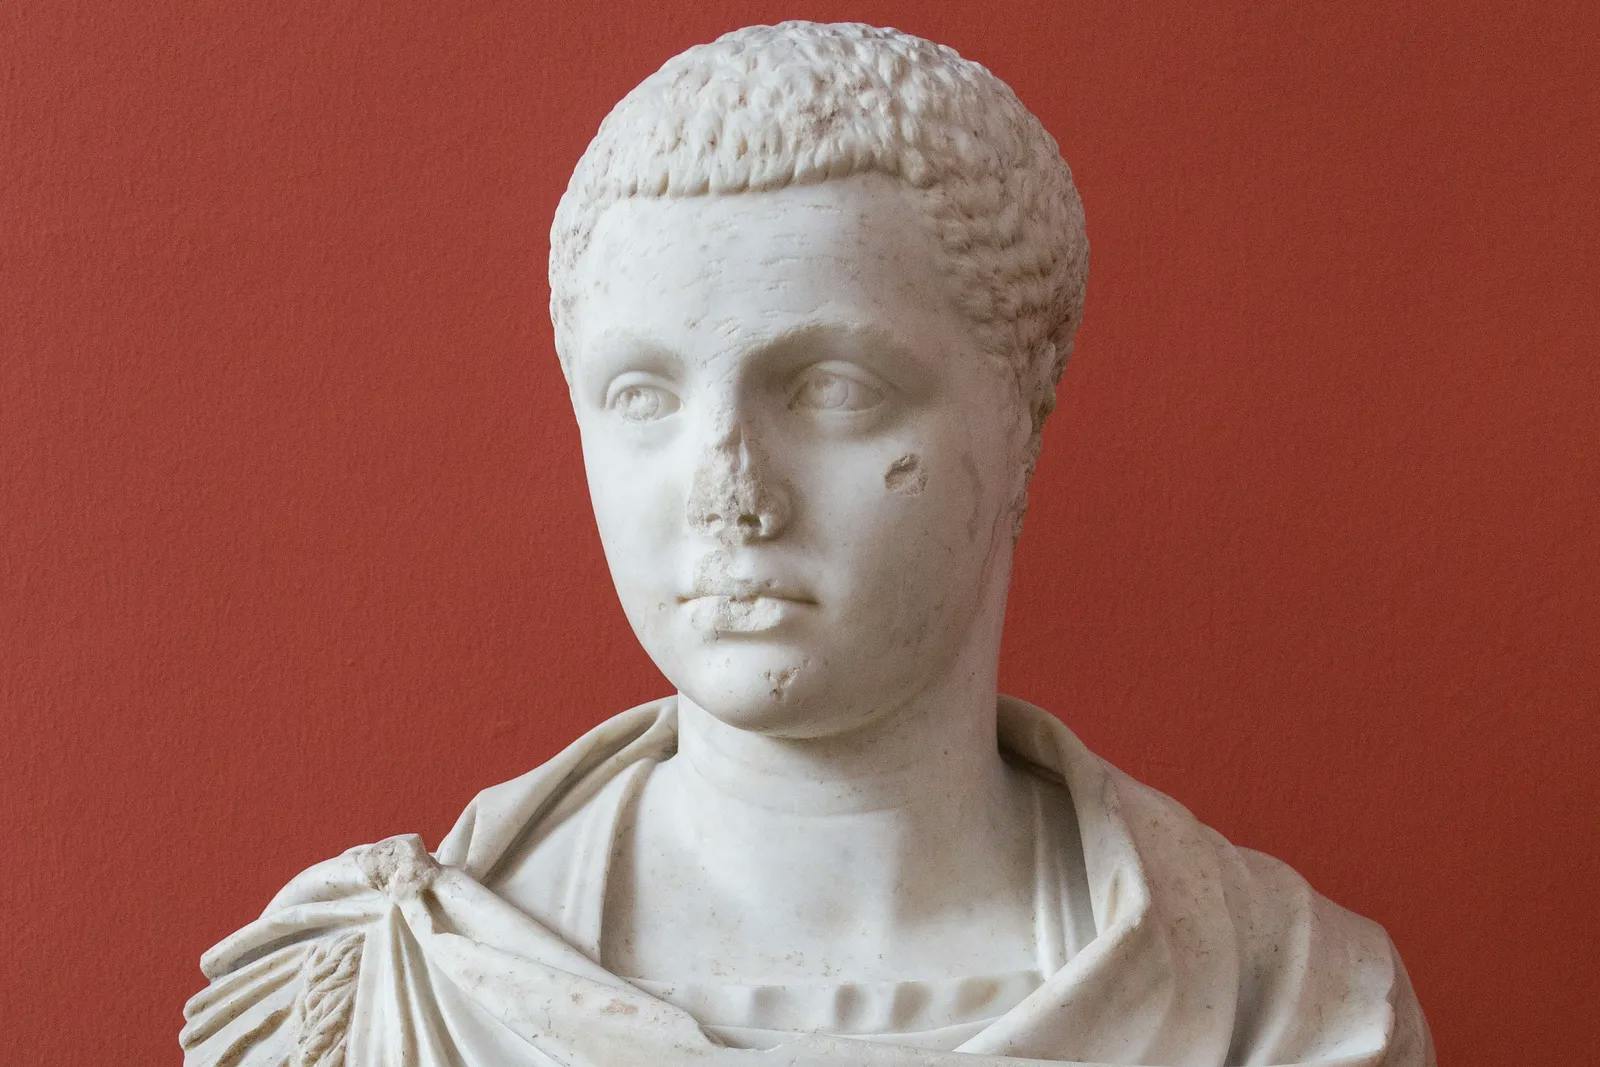 Großbritannien: Museum erklärt römischen Kaiser für transsexuell